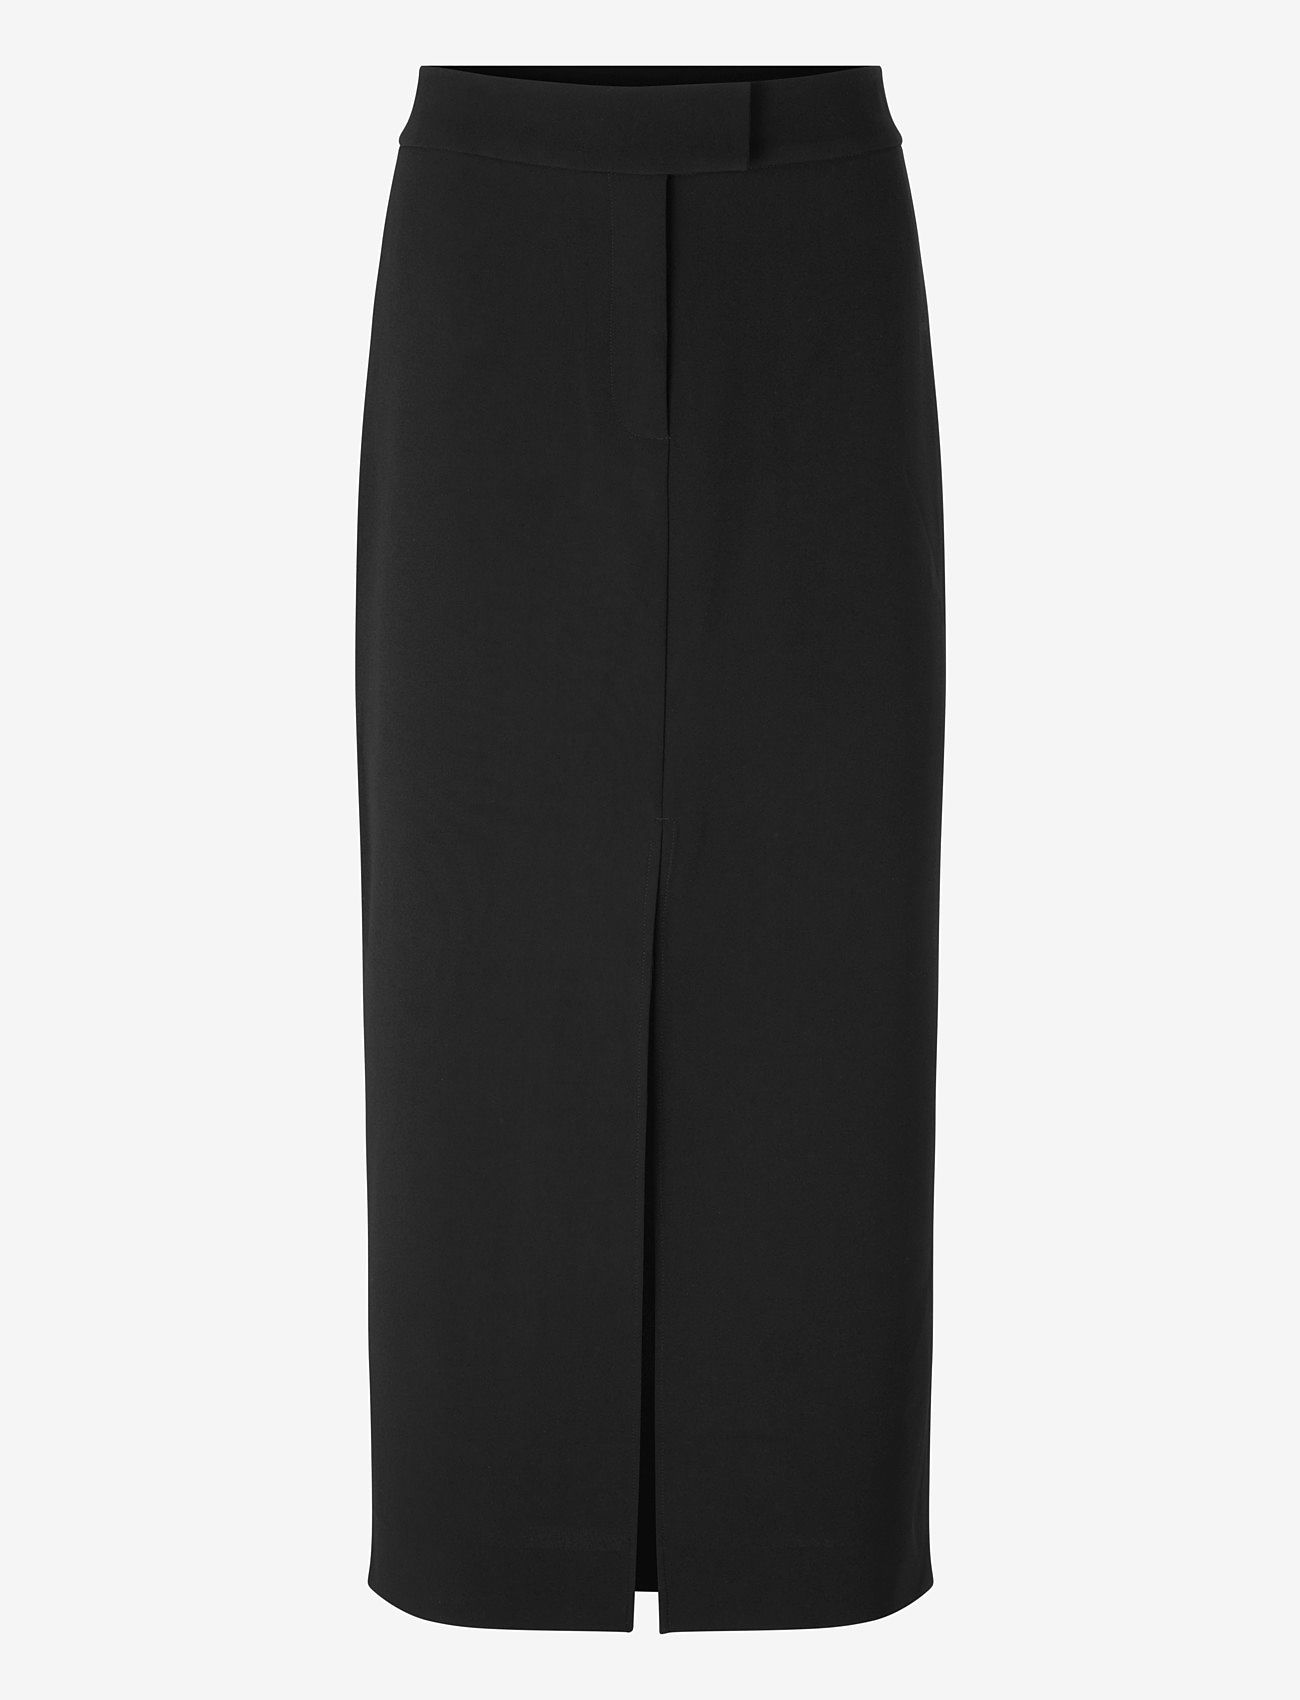 Second Female - Fique Pencil Skirt - ilgi sijonai - black - 0